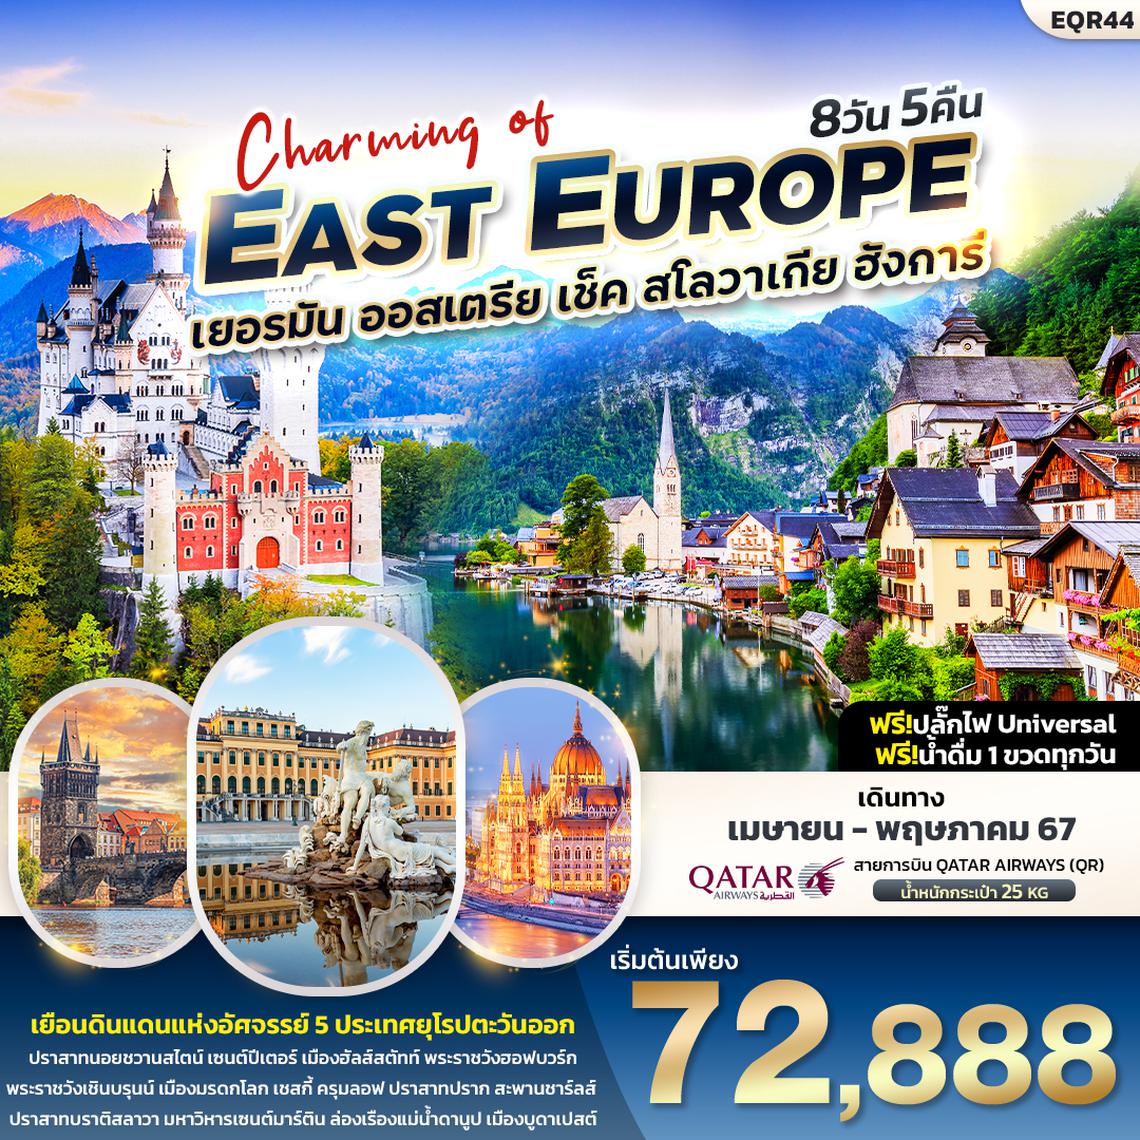 ทัวร์ยุโรป Charming of EAST EUROUP เยอรมัน ออสเตรีย เช็ค สโลวาเกีย ฮังการี 8 วัน 5 คืน